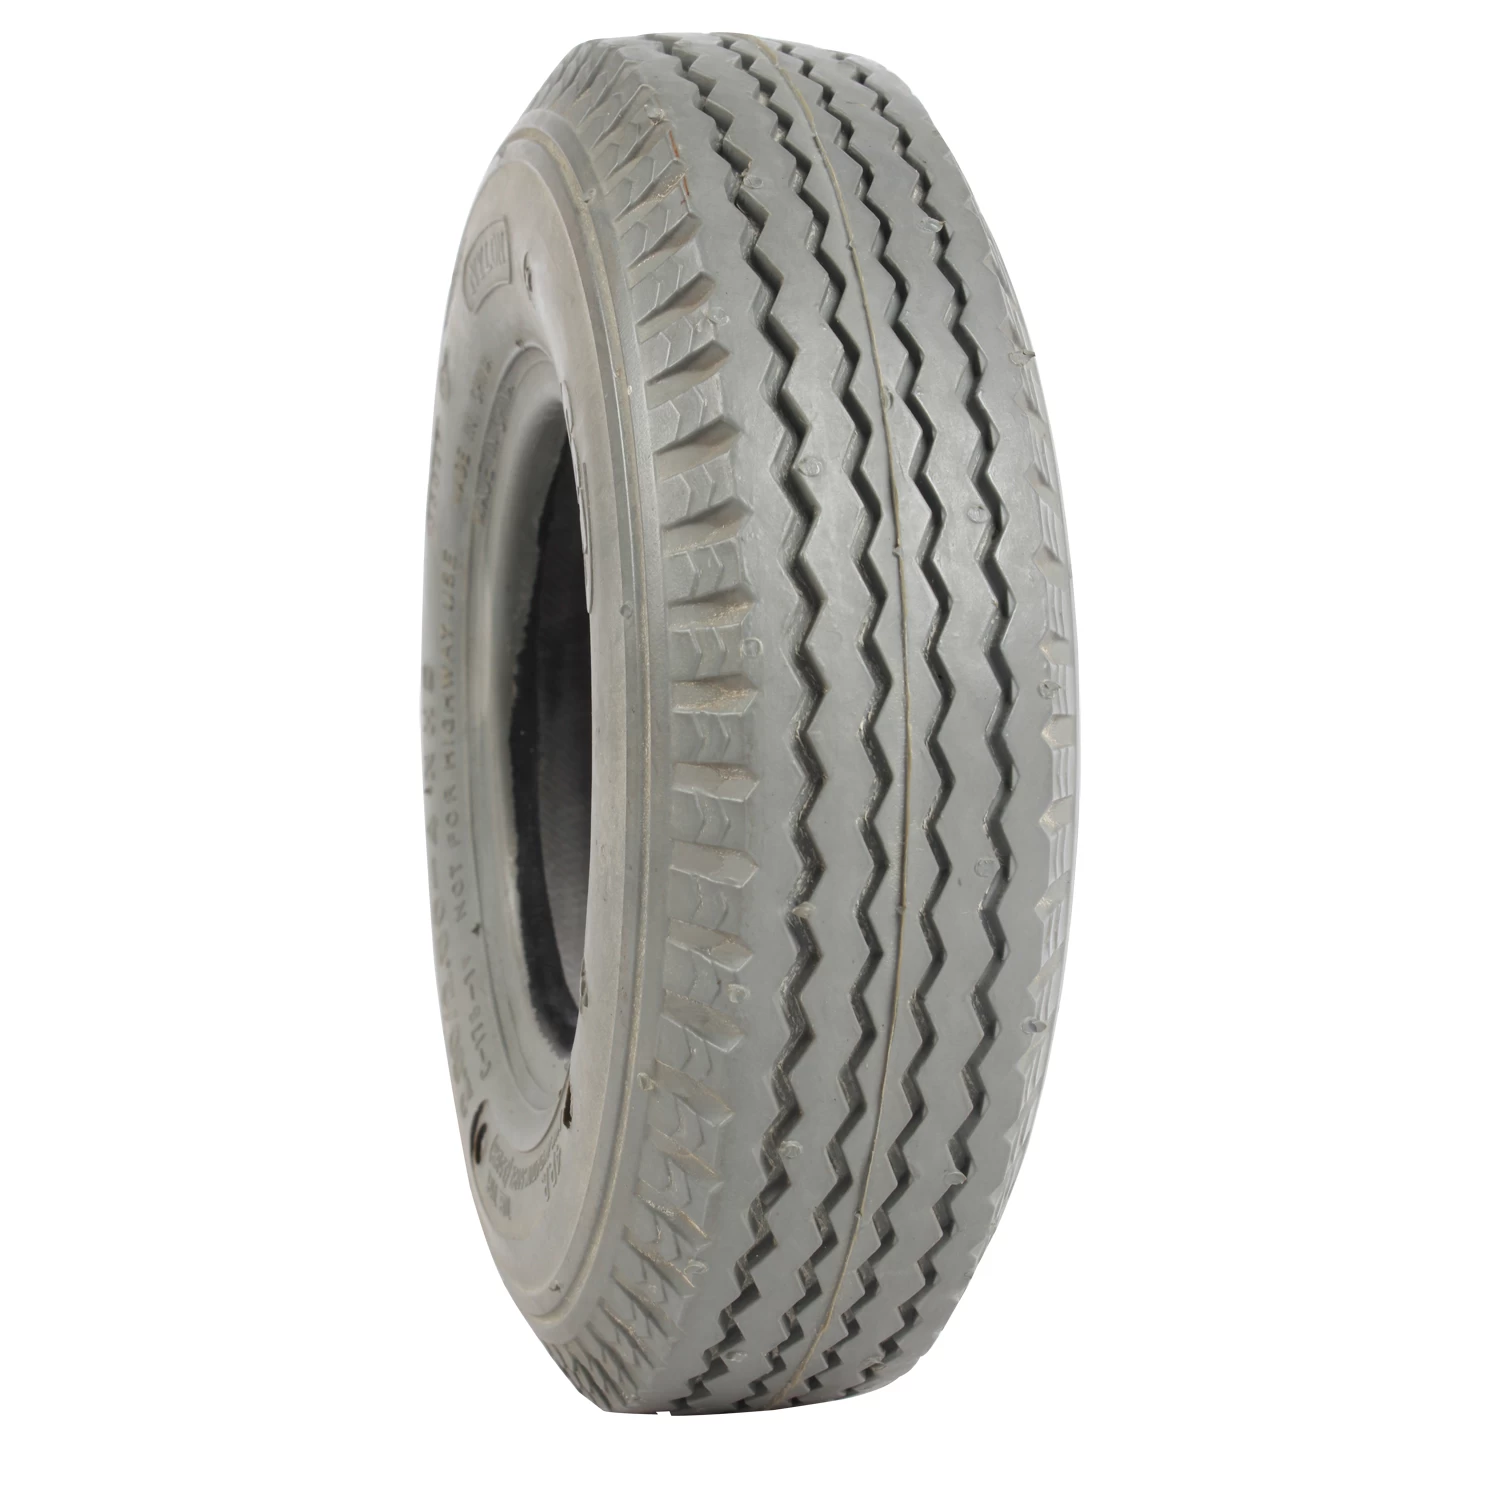 中国 OEM custom manufacturer solid rubber tires for cars メーカー